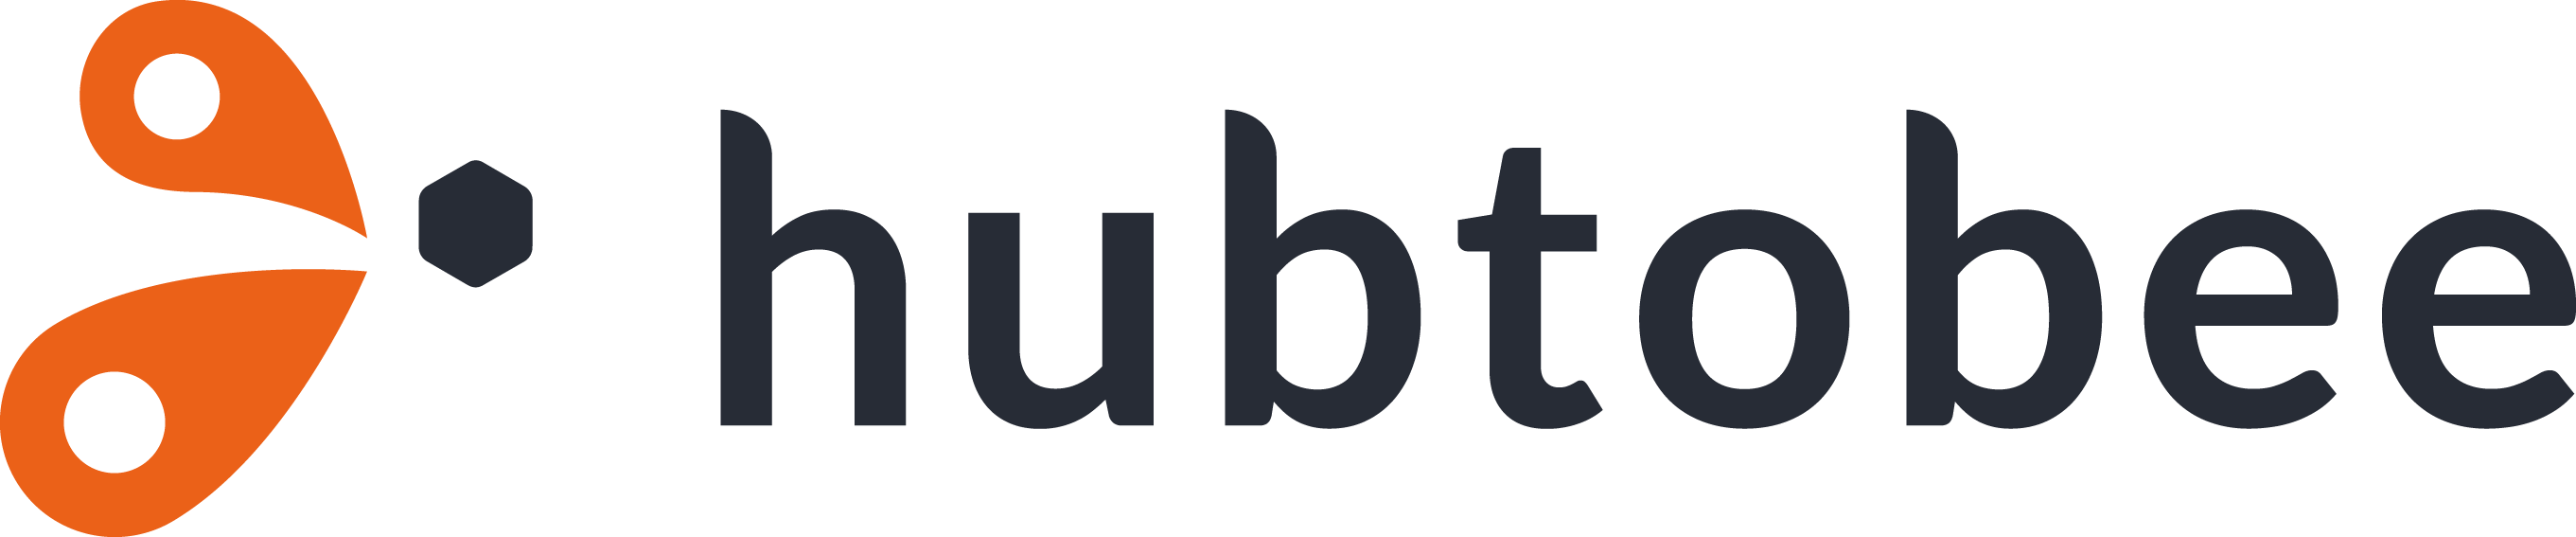 Logo hubtobee